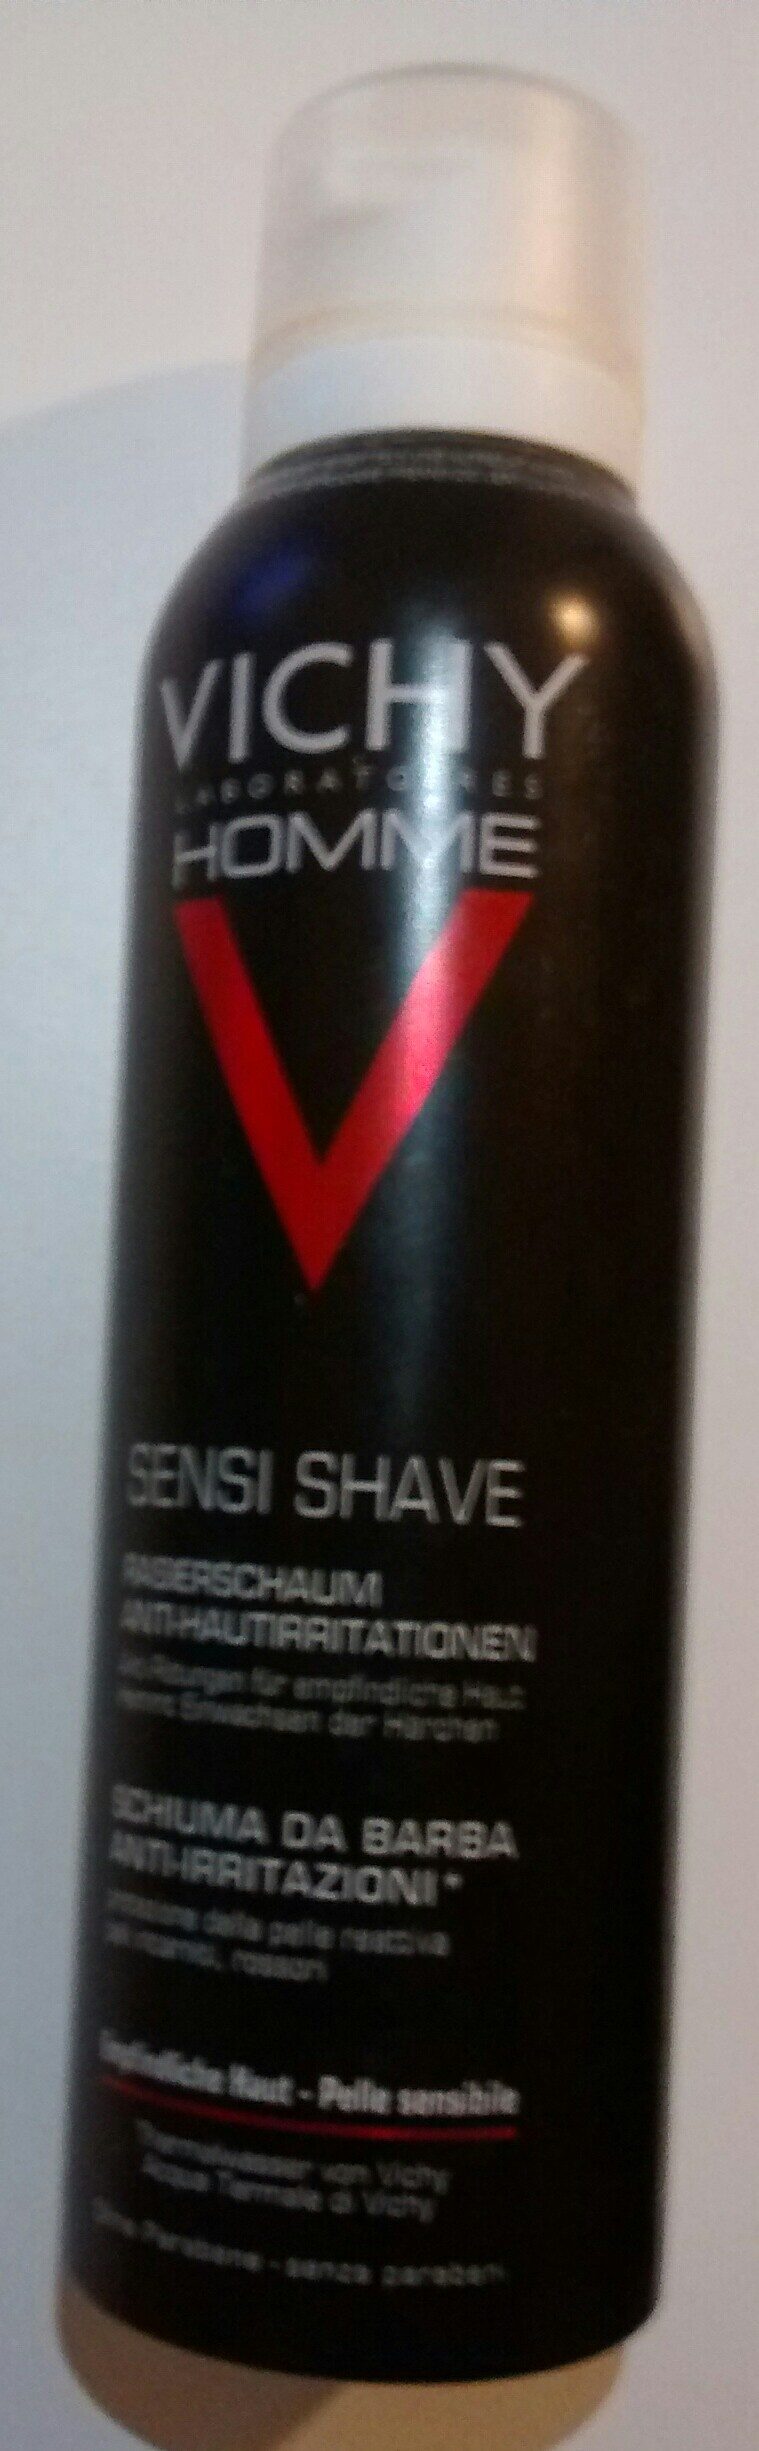 Sensi Shave Rasierschaum - Produit - de